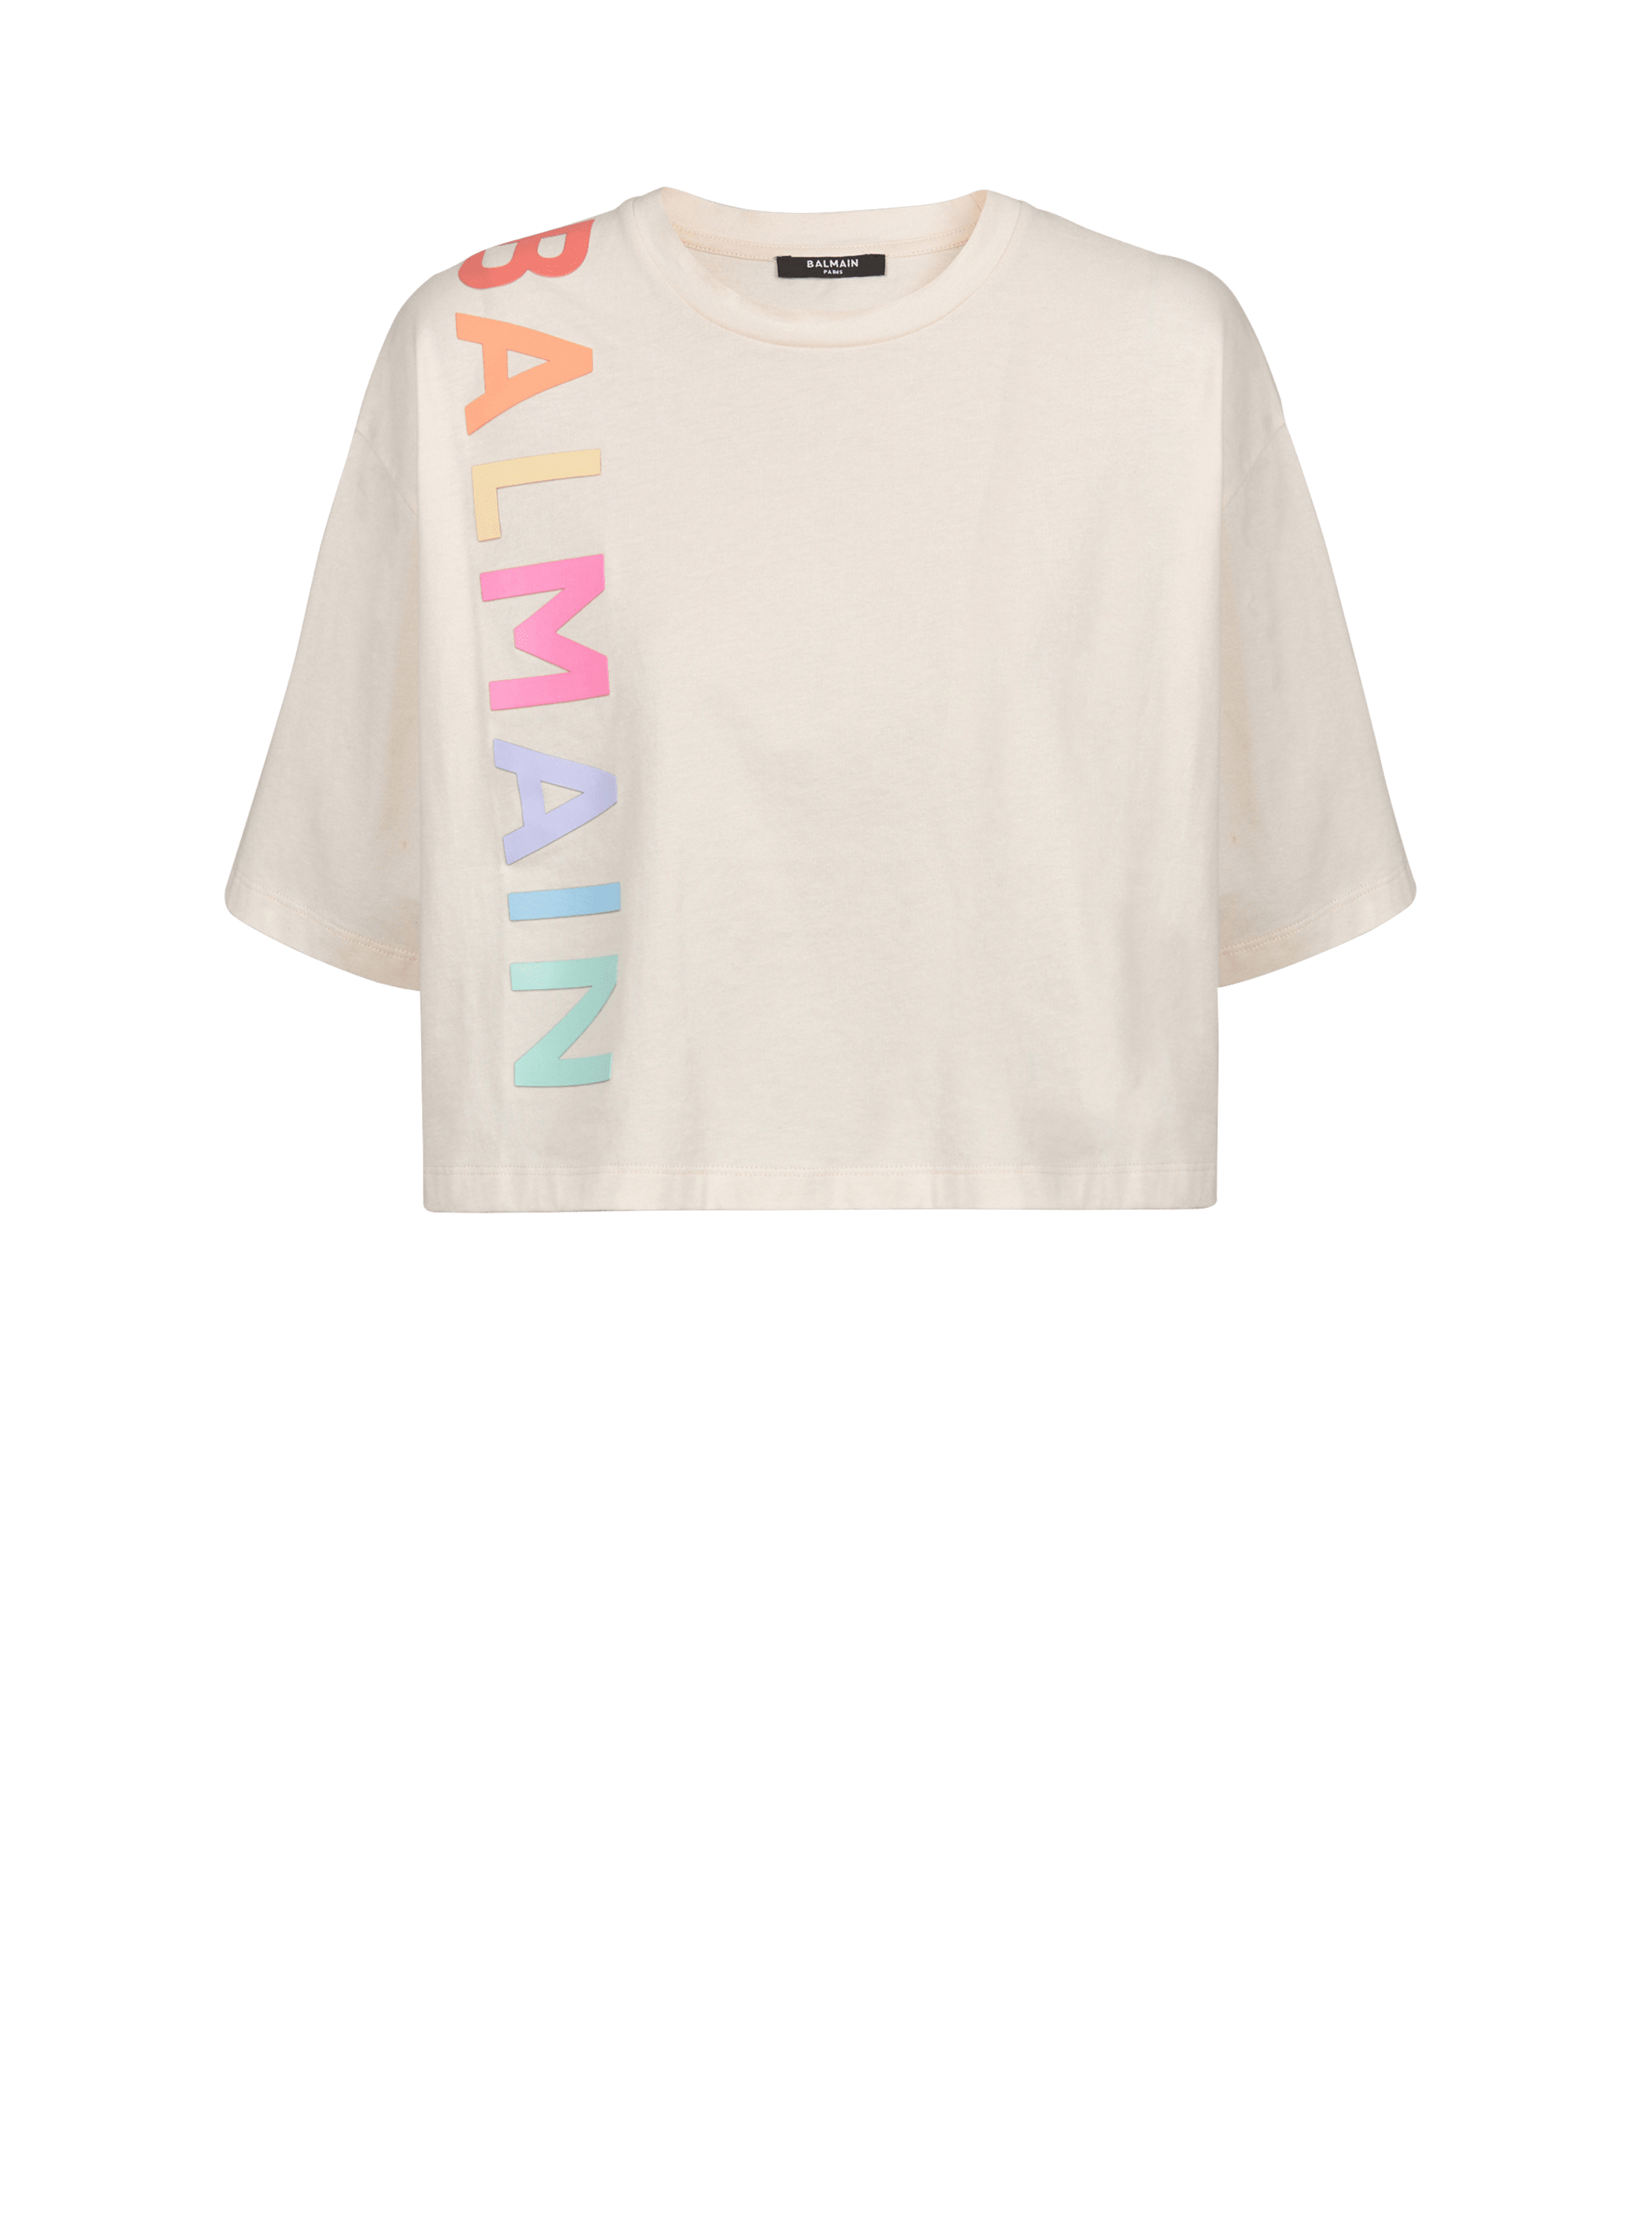 Kurzes T-Shirt aus Baumwolle mit aufgedrucktem Balmain-Logo, beige, hi-res